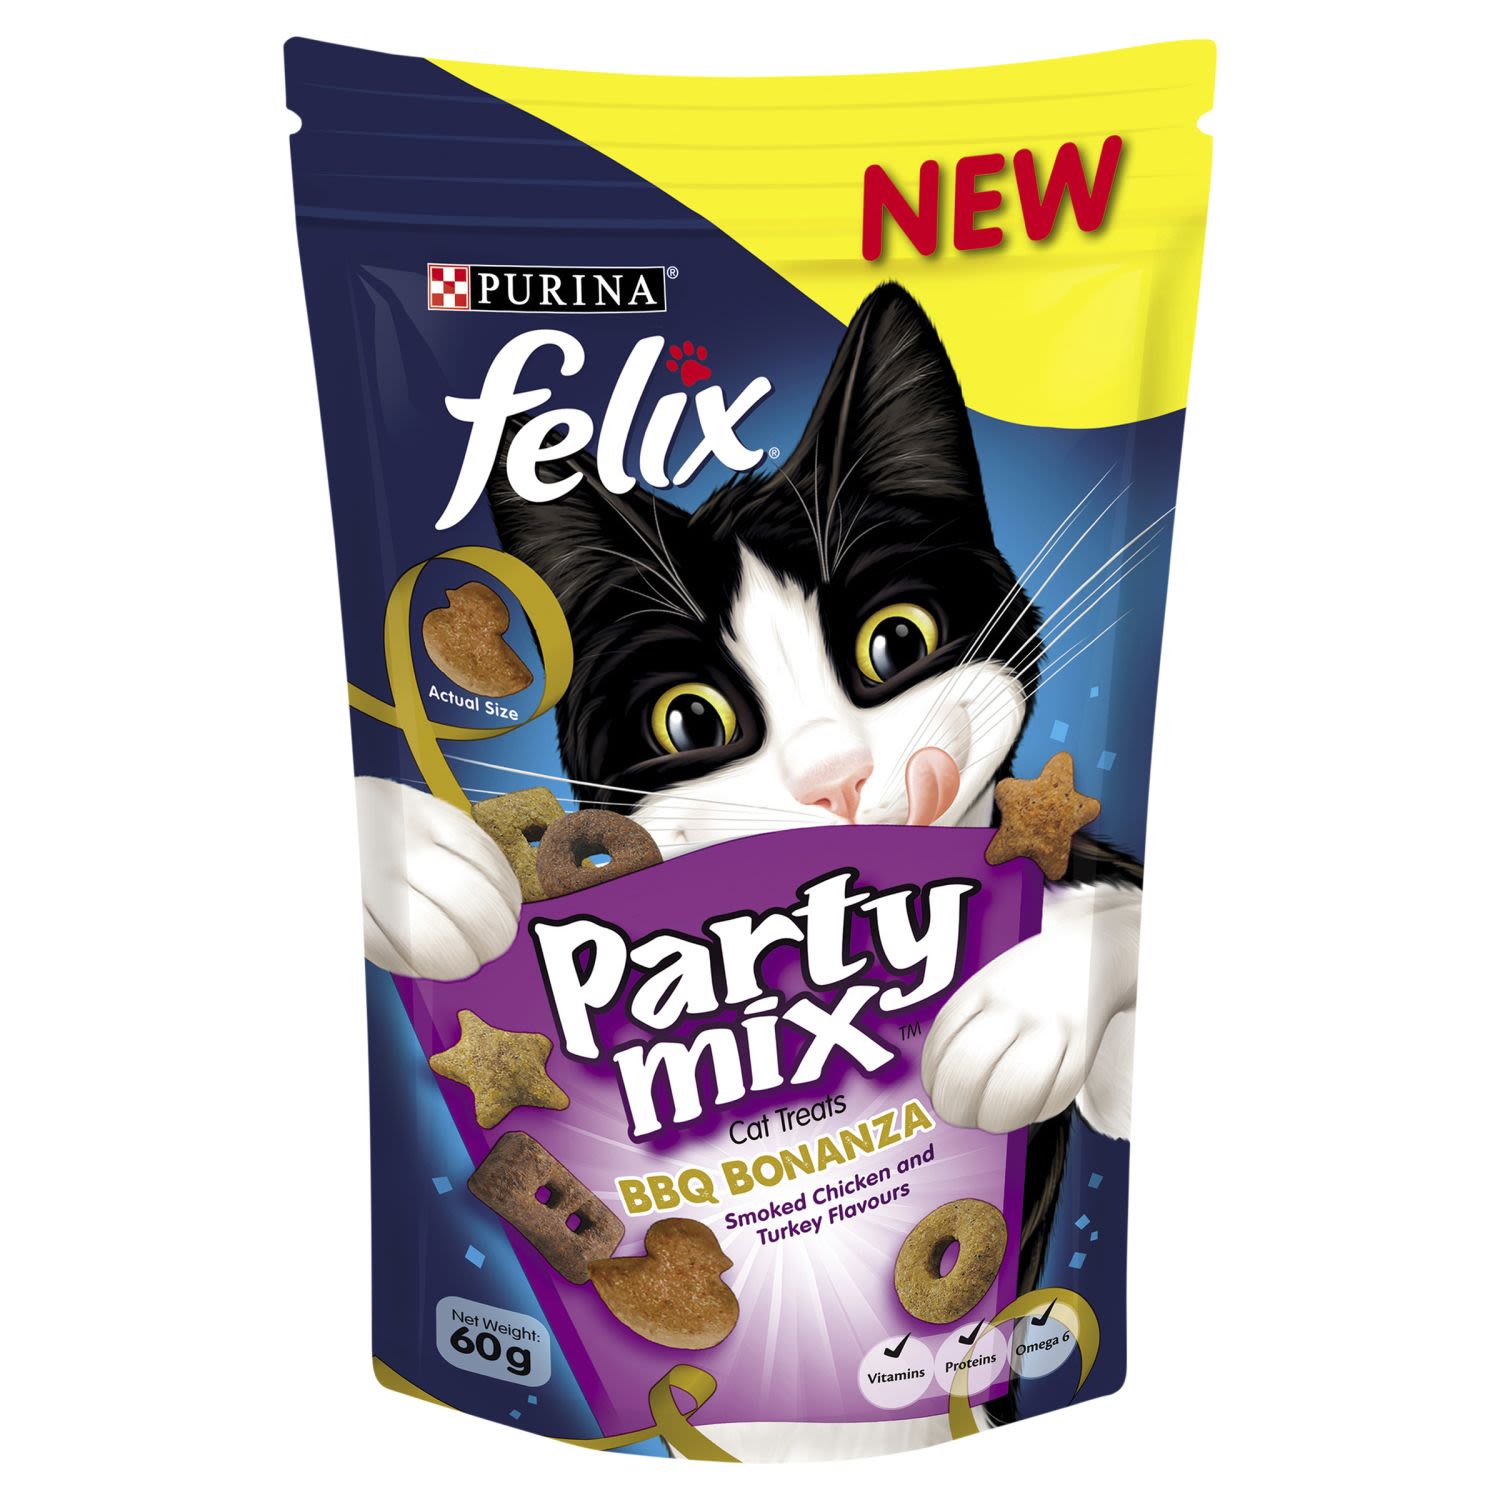 Felix Adult Party Mix BBQ Bonanza Cat Treats, 60 Gram